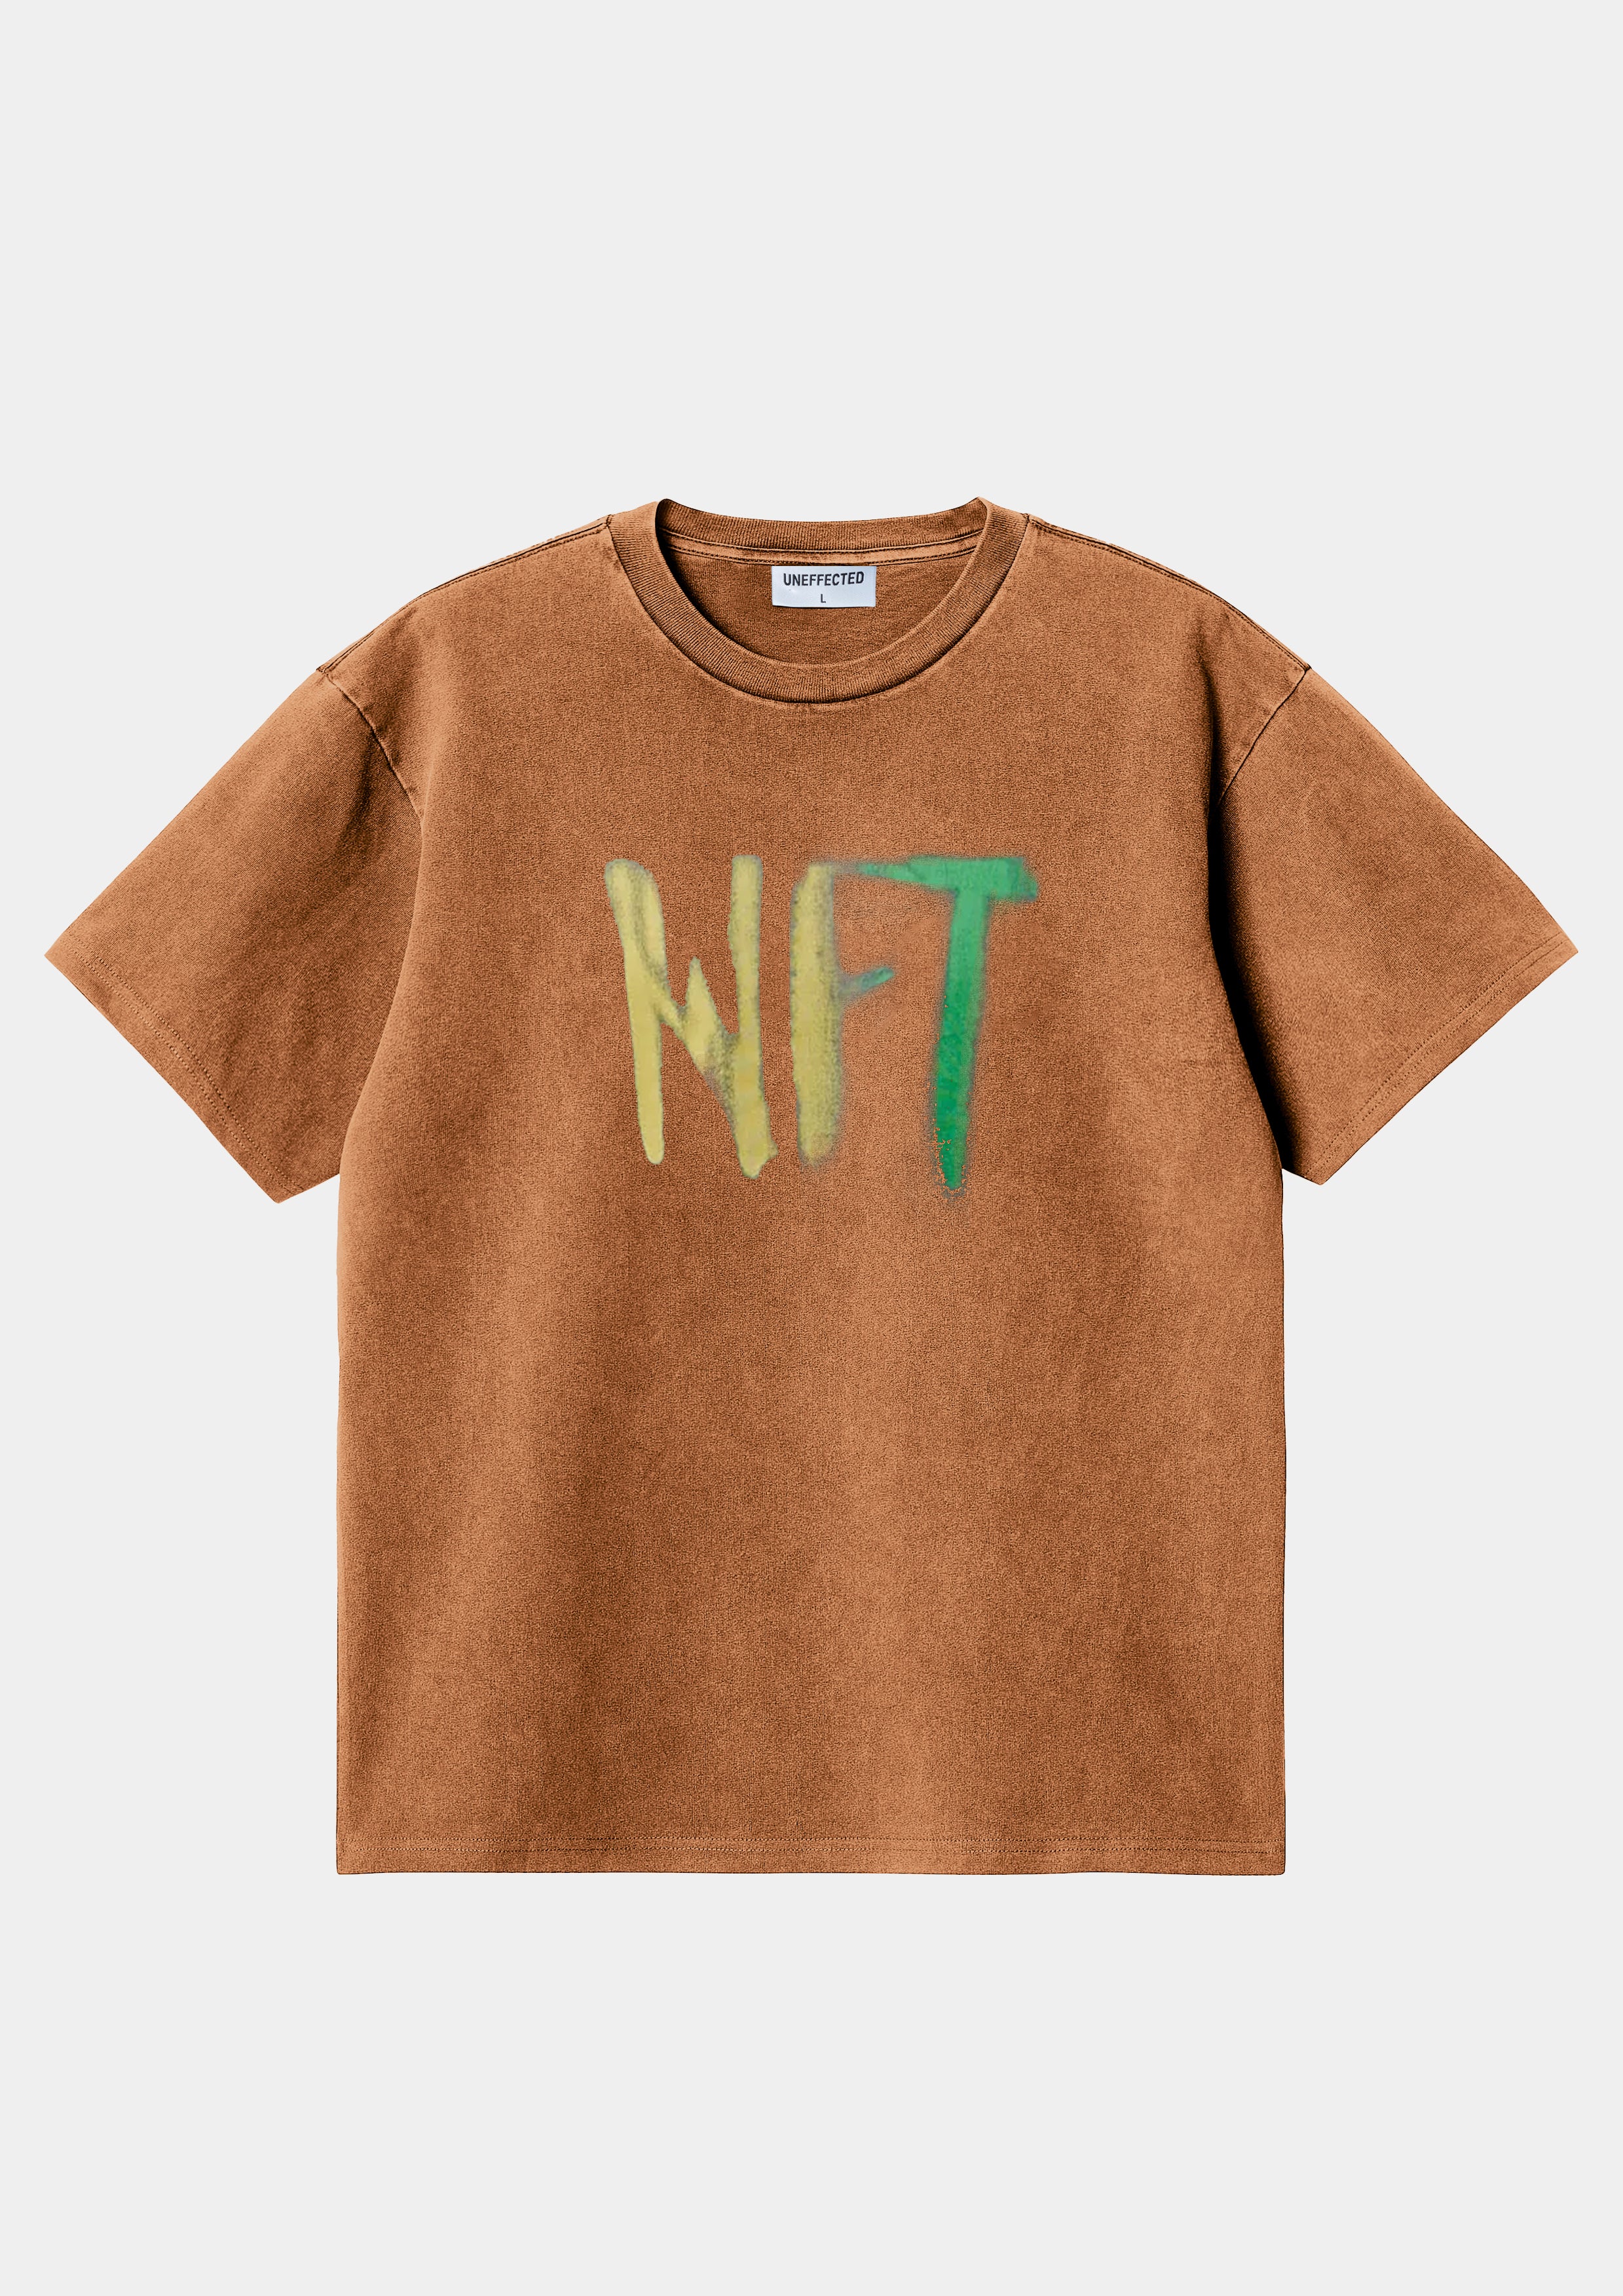 NFT Heavy Oversized Washed Tee - Orange - UNEFFECTED STUDIOS® - T - shirt - UNEFFECTED STUDIOS®